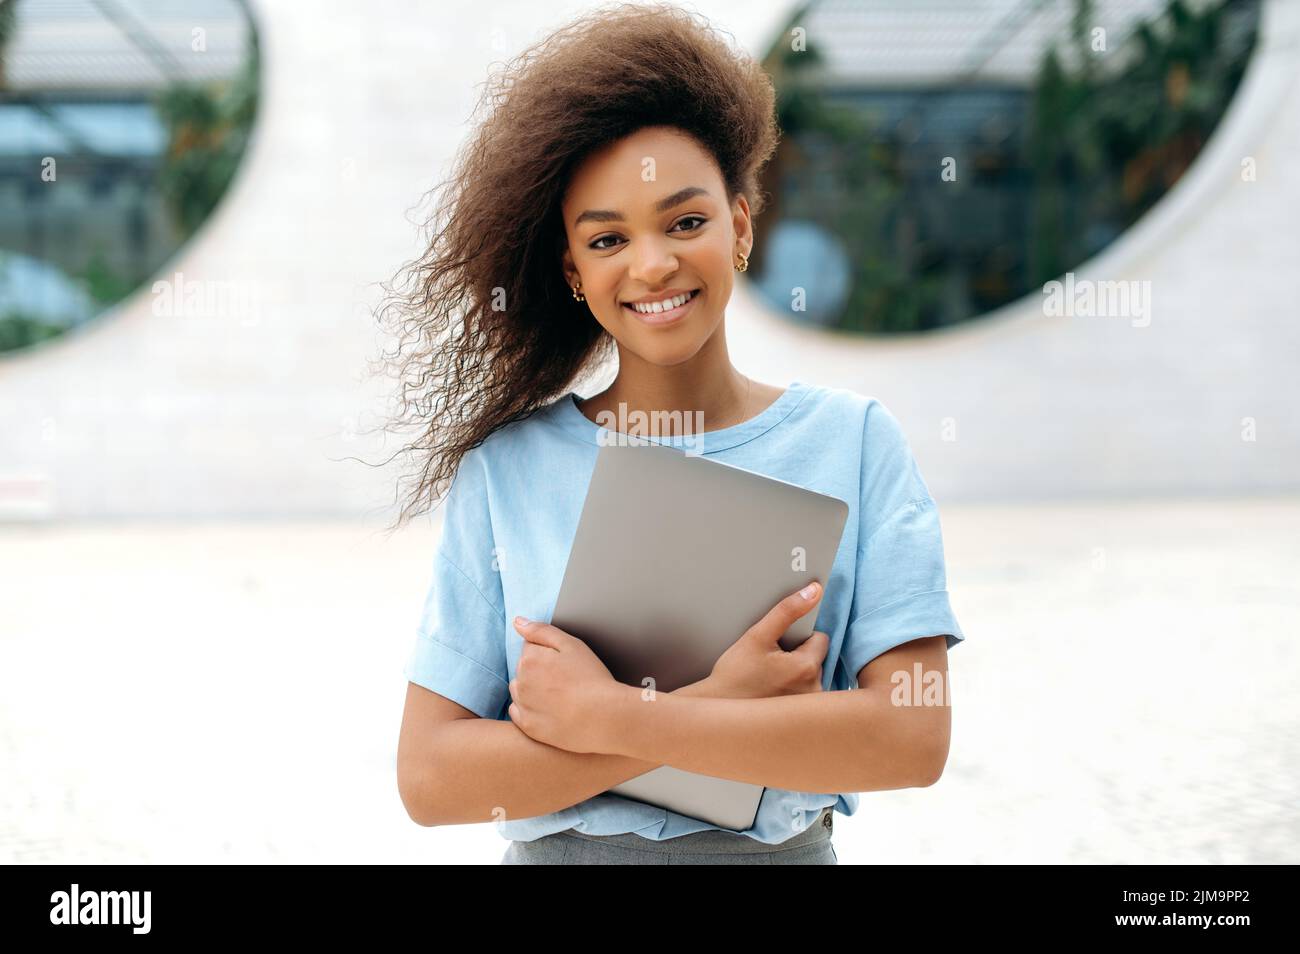 Freundliche, positive, lockige afroamerikanische junge Geschäftsfrau, Freiberuflerin, Studentin, mit Brille, in einem blauen Hemd, Laptop haltend, im Freien stehend, Kamera anblickend, glücklich lächelnd Stockfoto